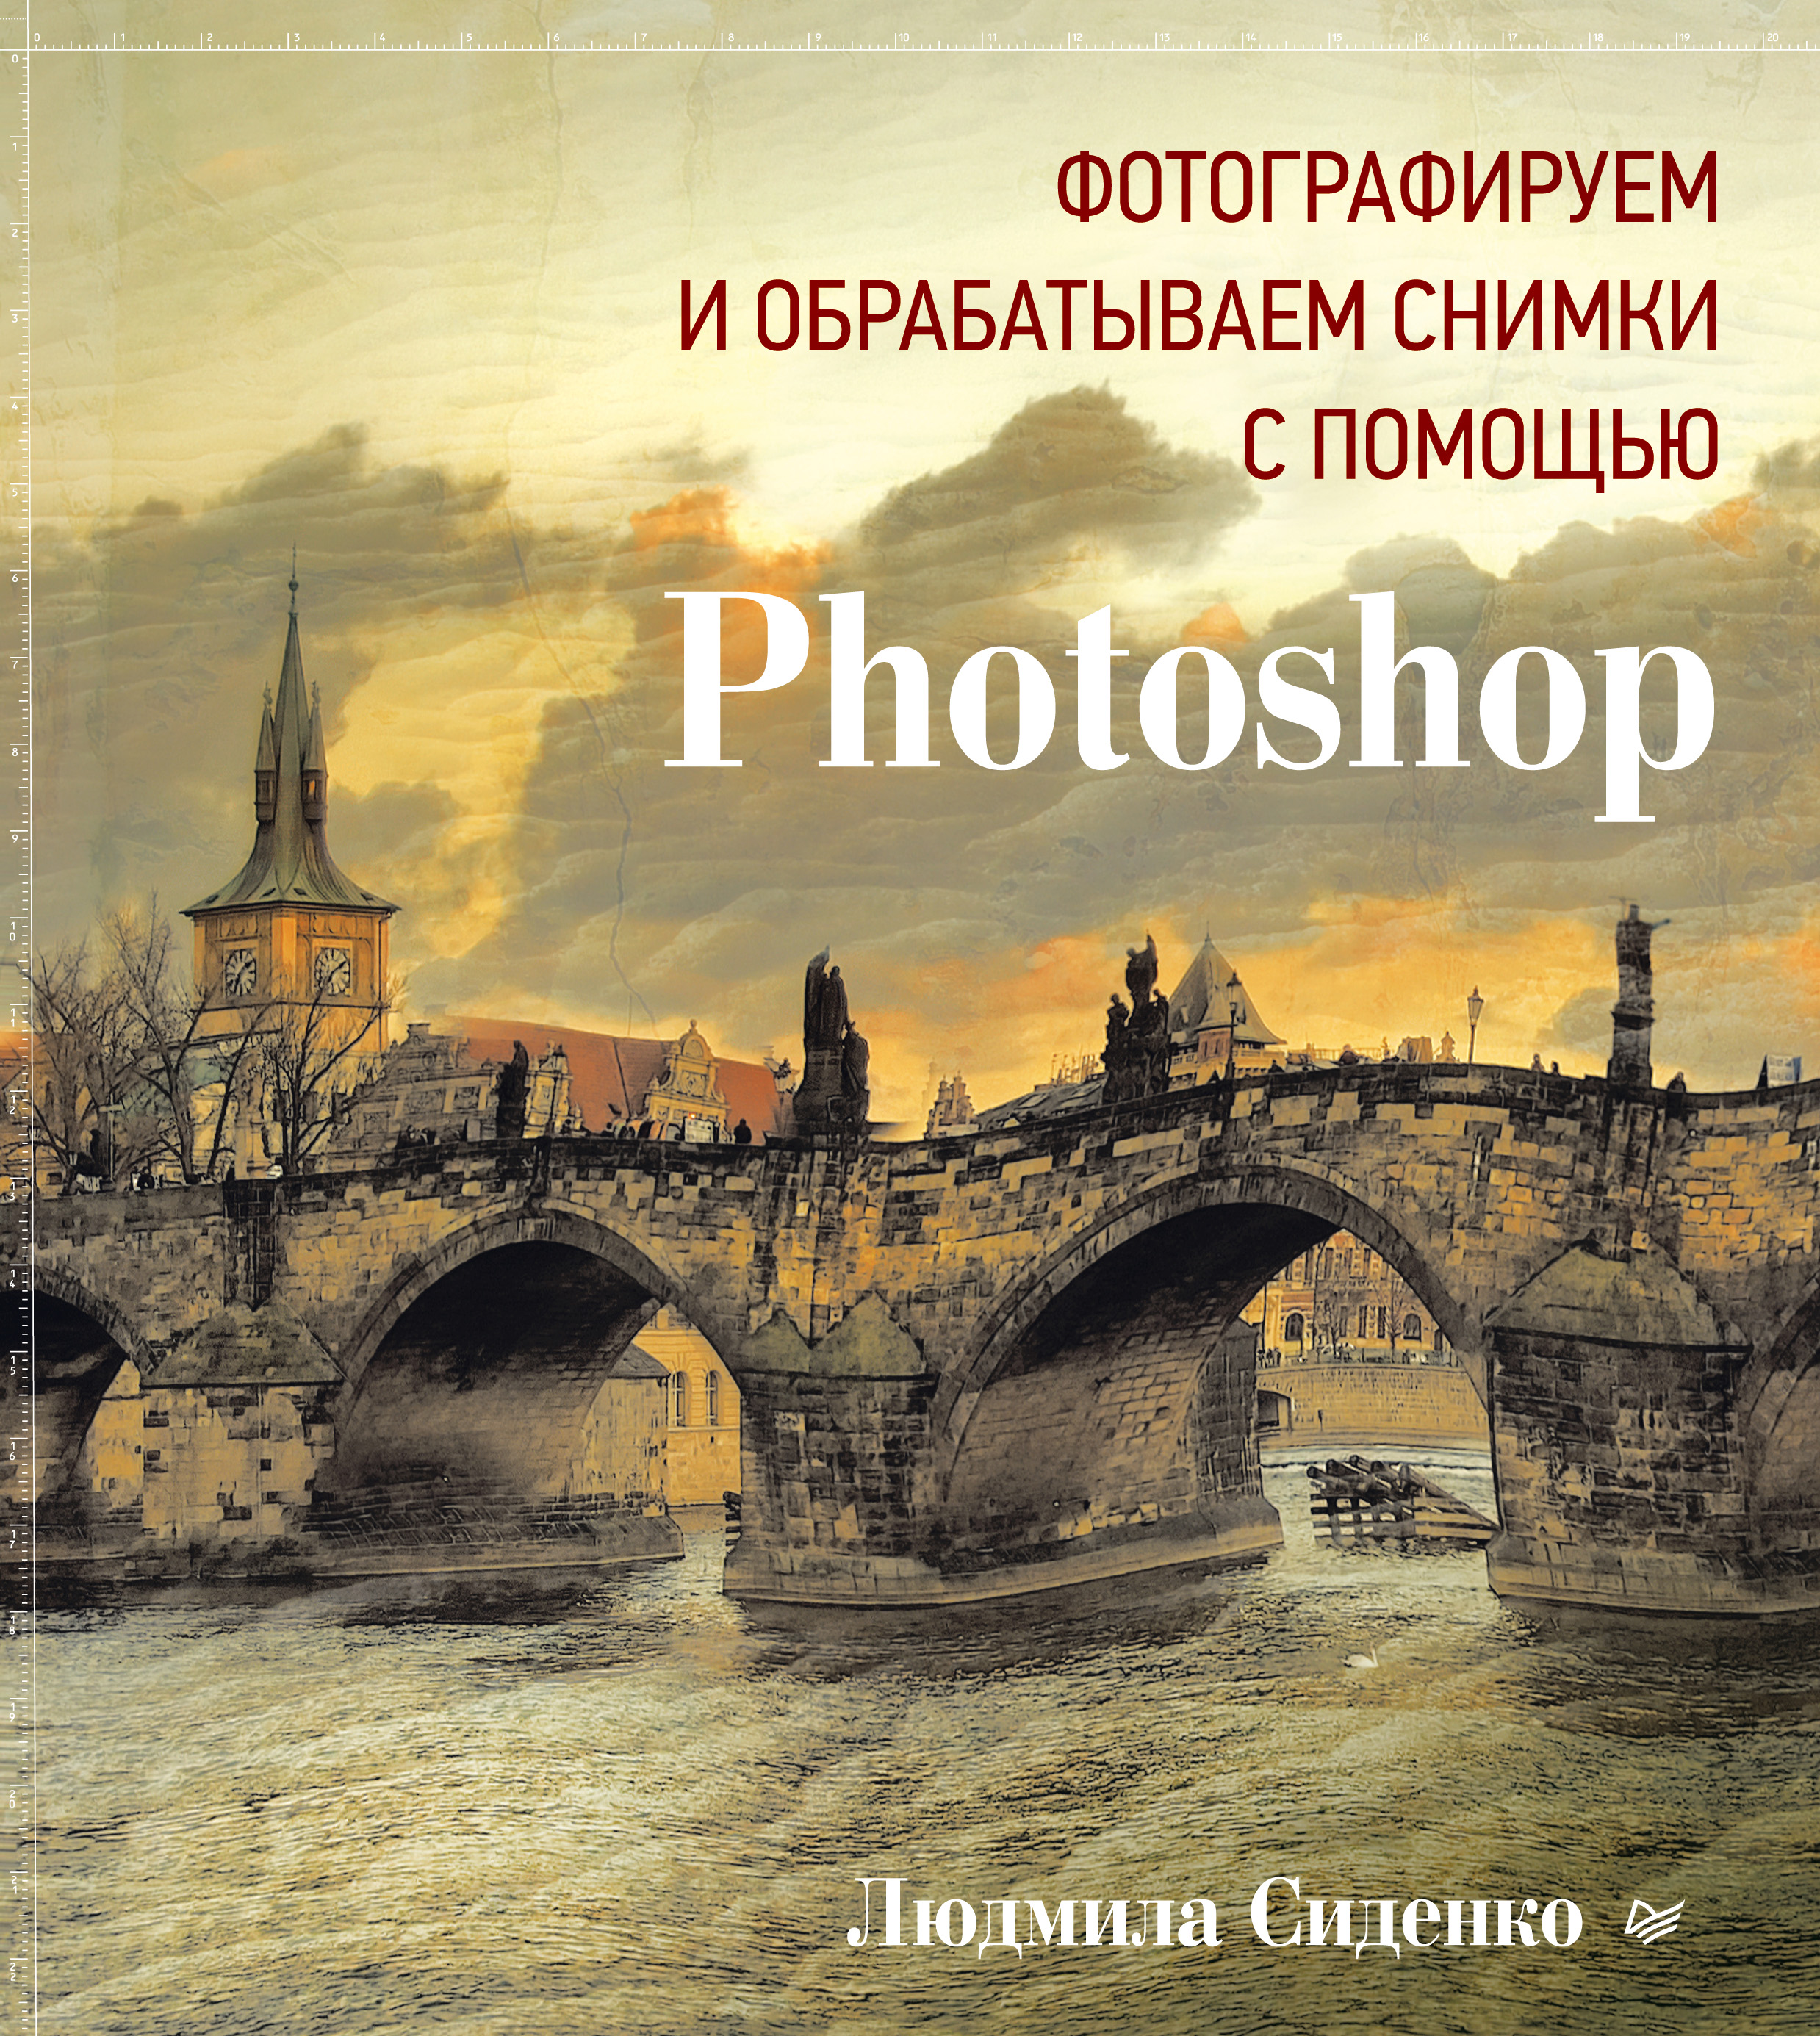 Книга  Фотографируем и обрабатываем снимки с помощью Photoshop созданная Людмила Сиденко, Л. Адуевская может относится к жанру изобразительное искусство, программы. Стоимость электронной книги Фотографируем и обрабатываем снимки с помощью Photoshop с идентификатором 8481419 составляет 519.00 руб.